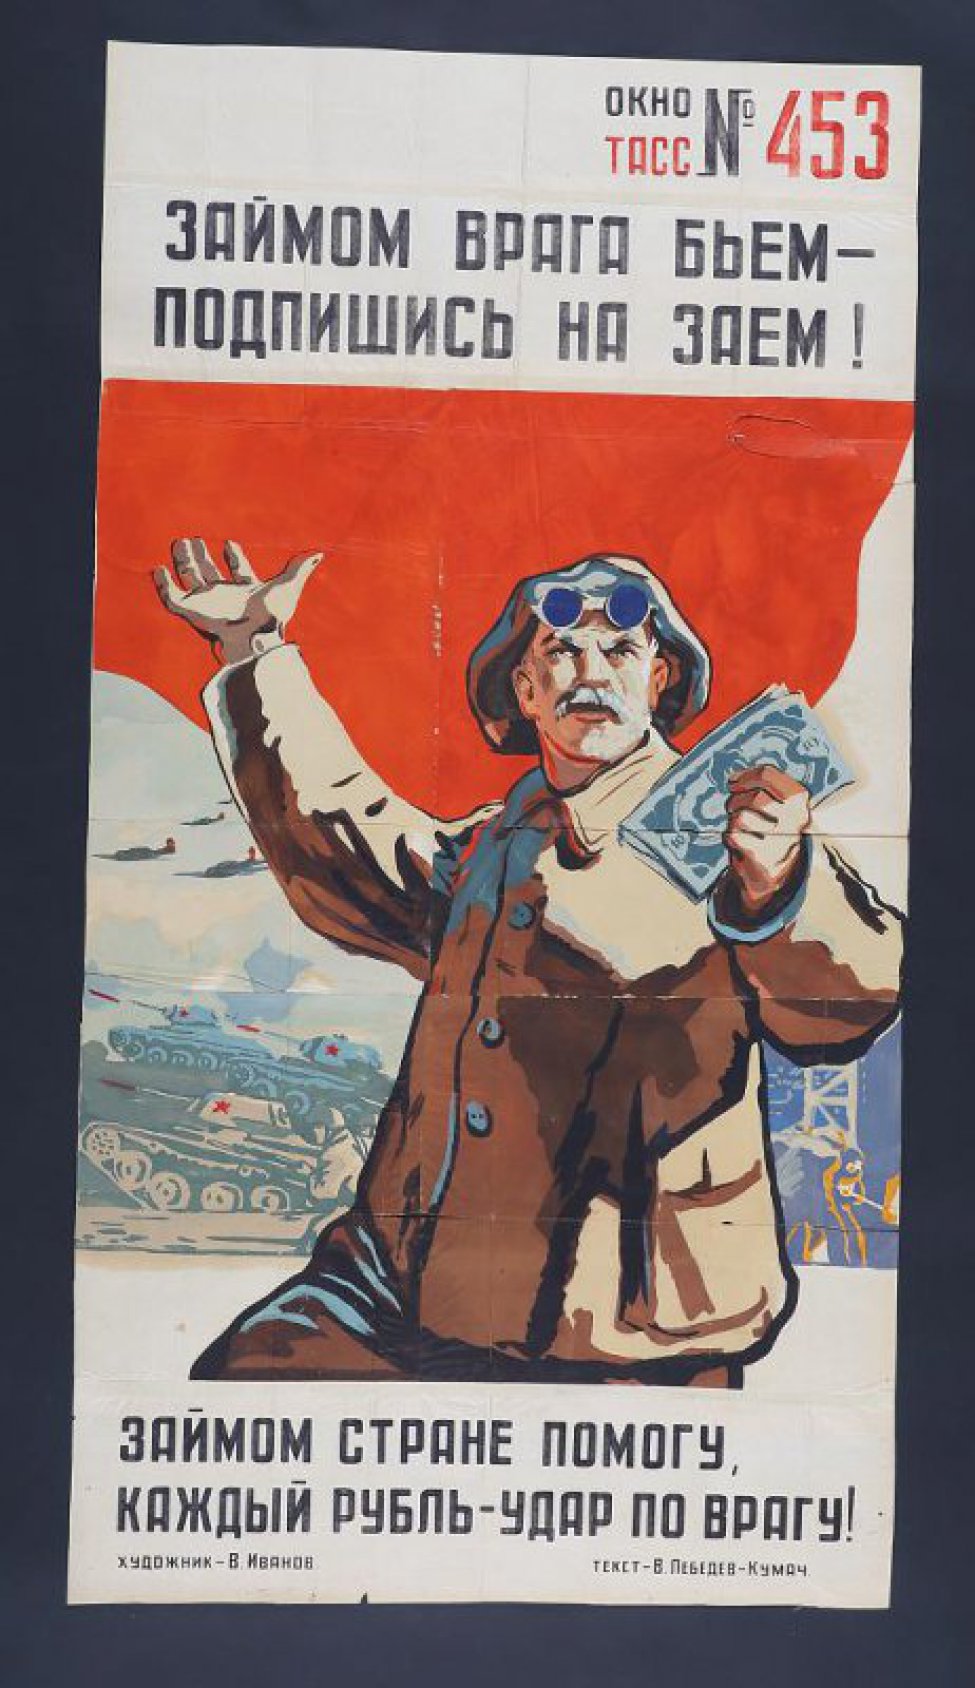 На фоне знамени- рабочий с деньгами, дальше- танки, самолеты. Текст Лебедева- Кумача:" Займом стране помогу, каждый рубль- удар по врагу!".